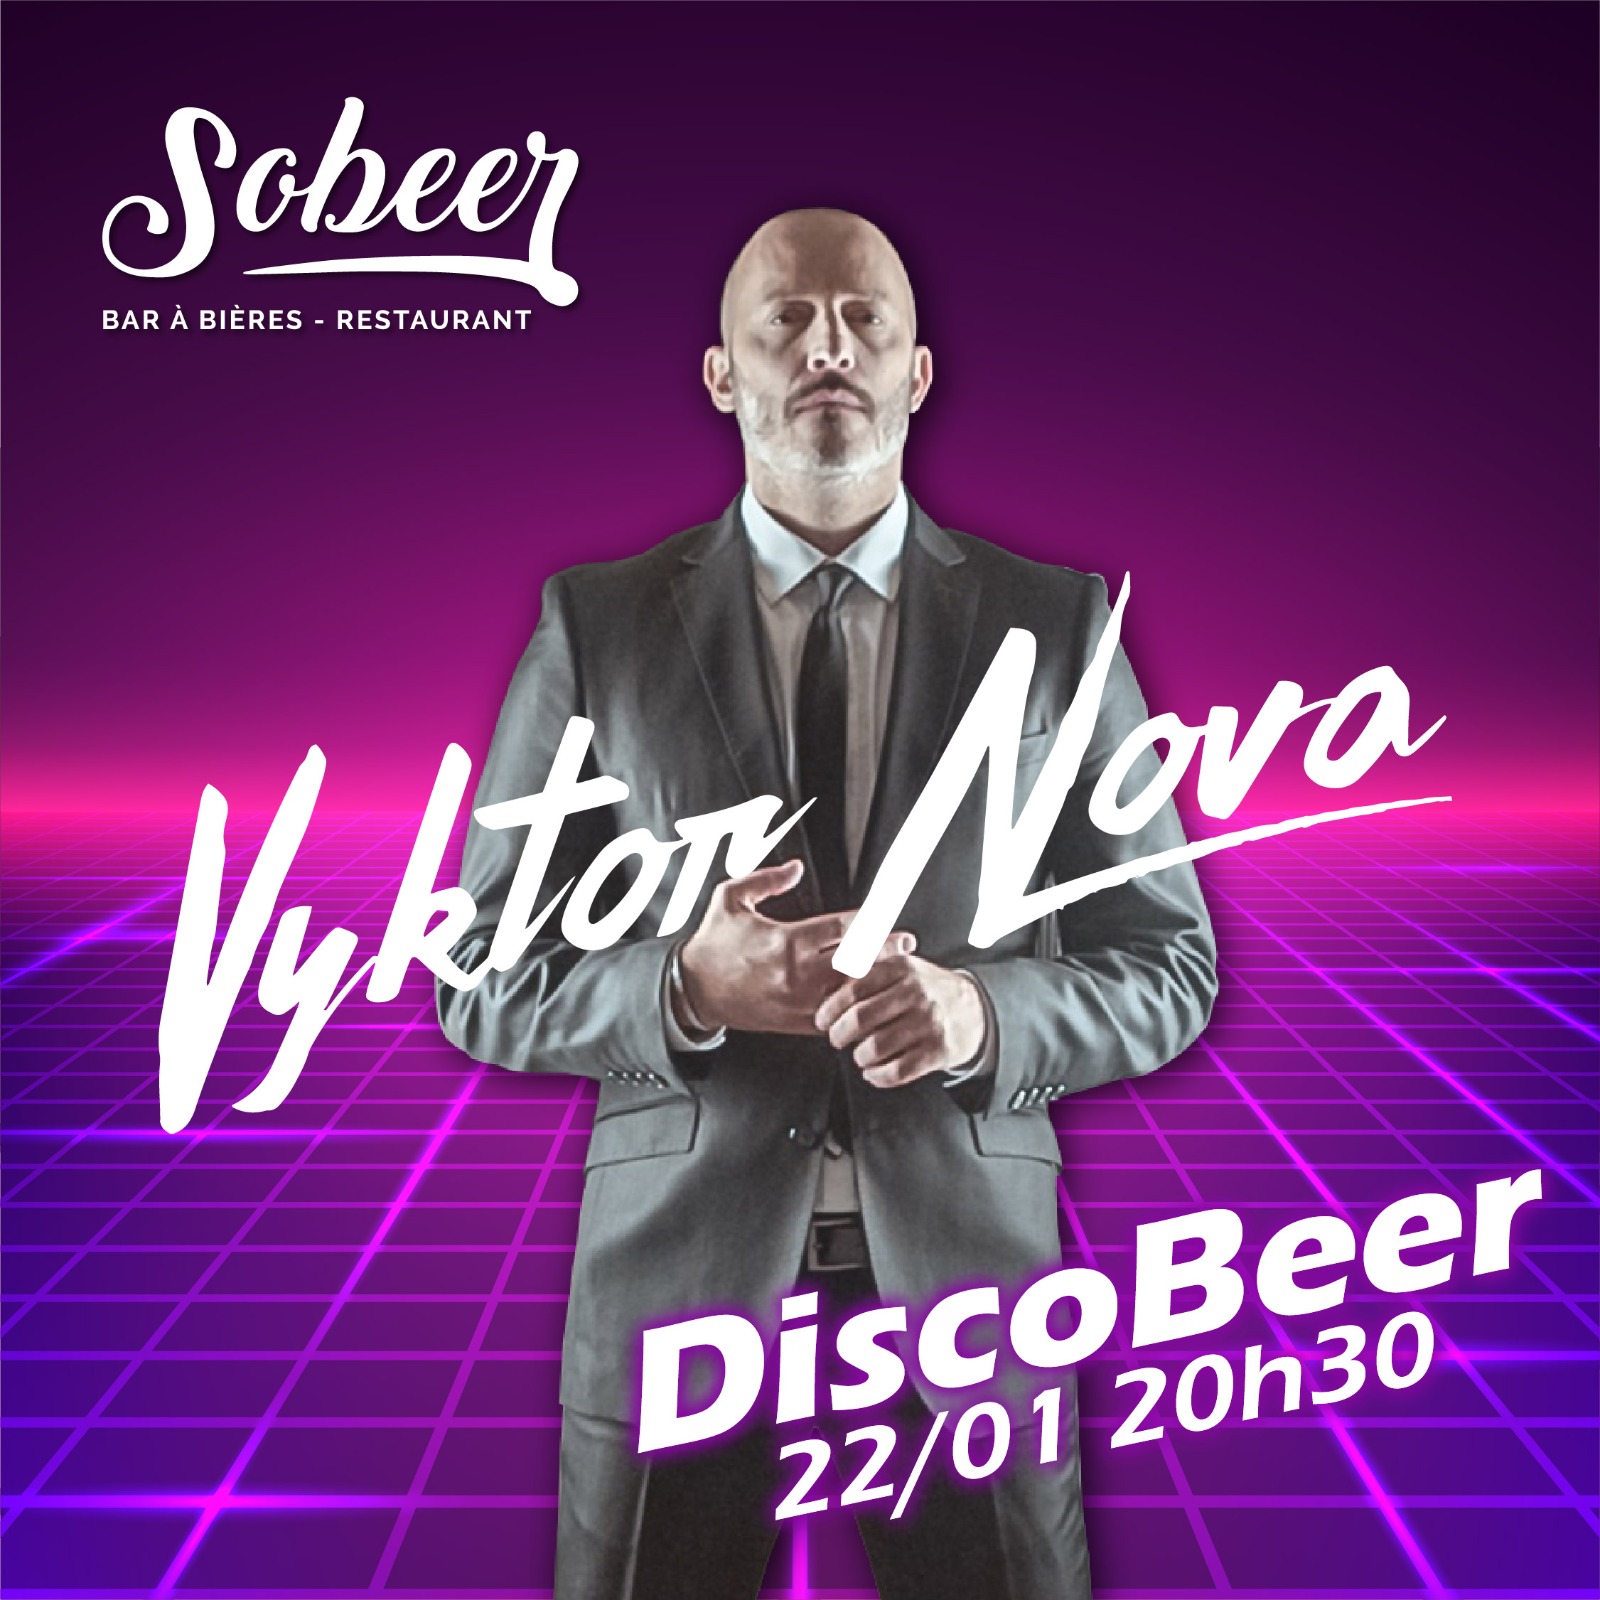 Disco Beer V2 by Vyktor Nova